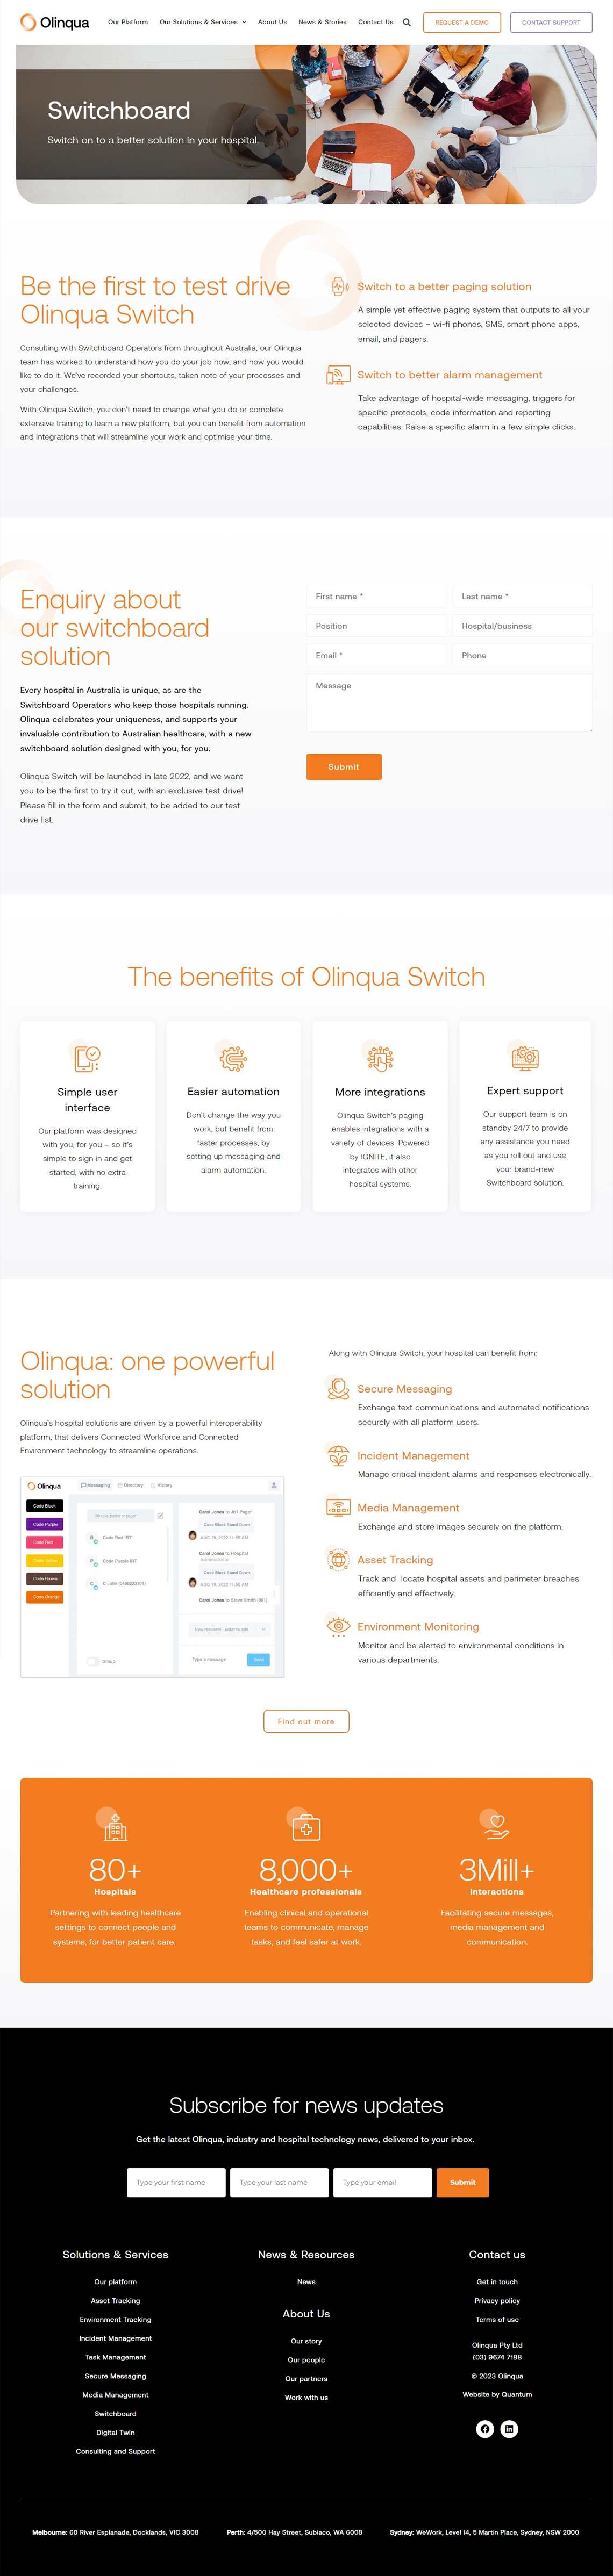 Olinqua Full Content Page